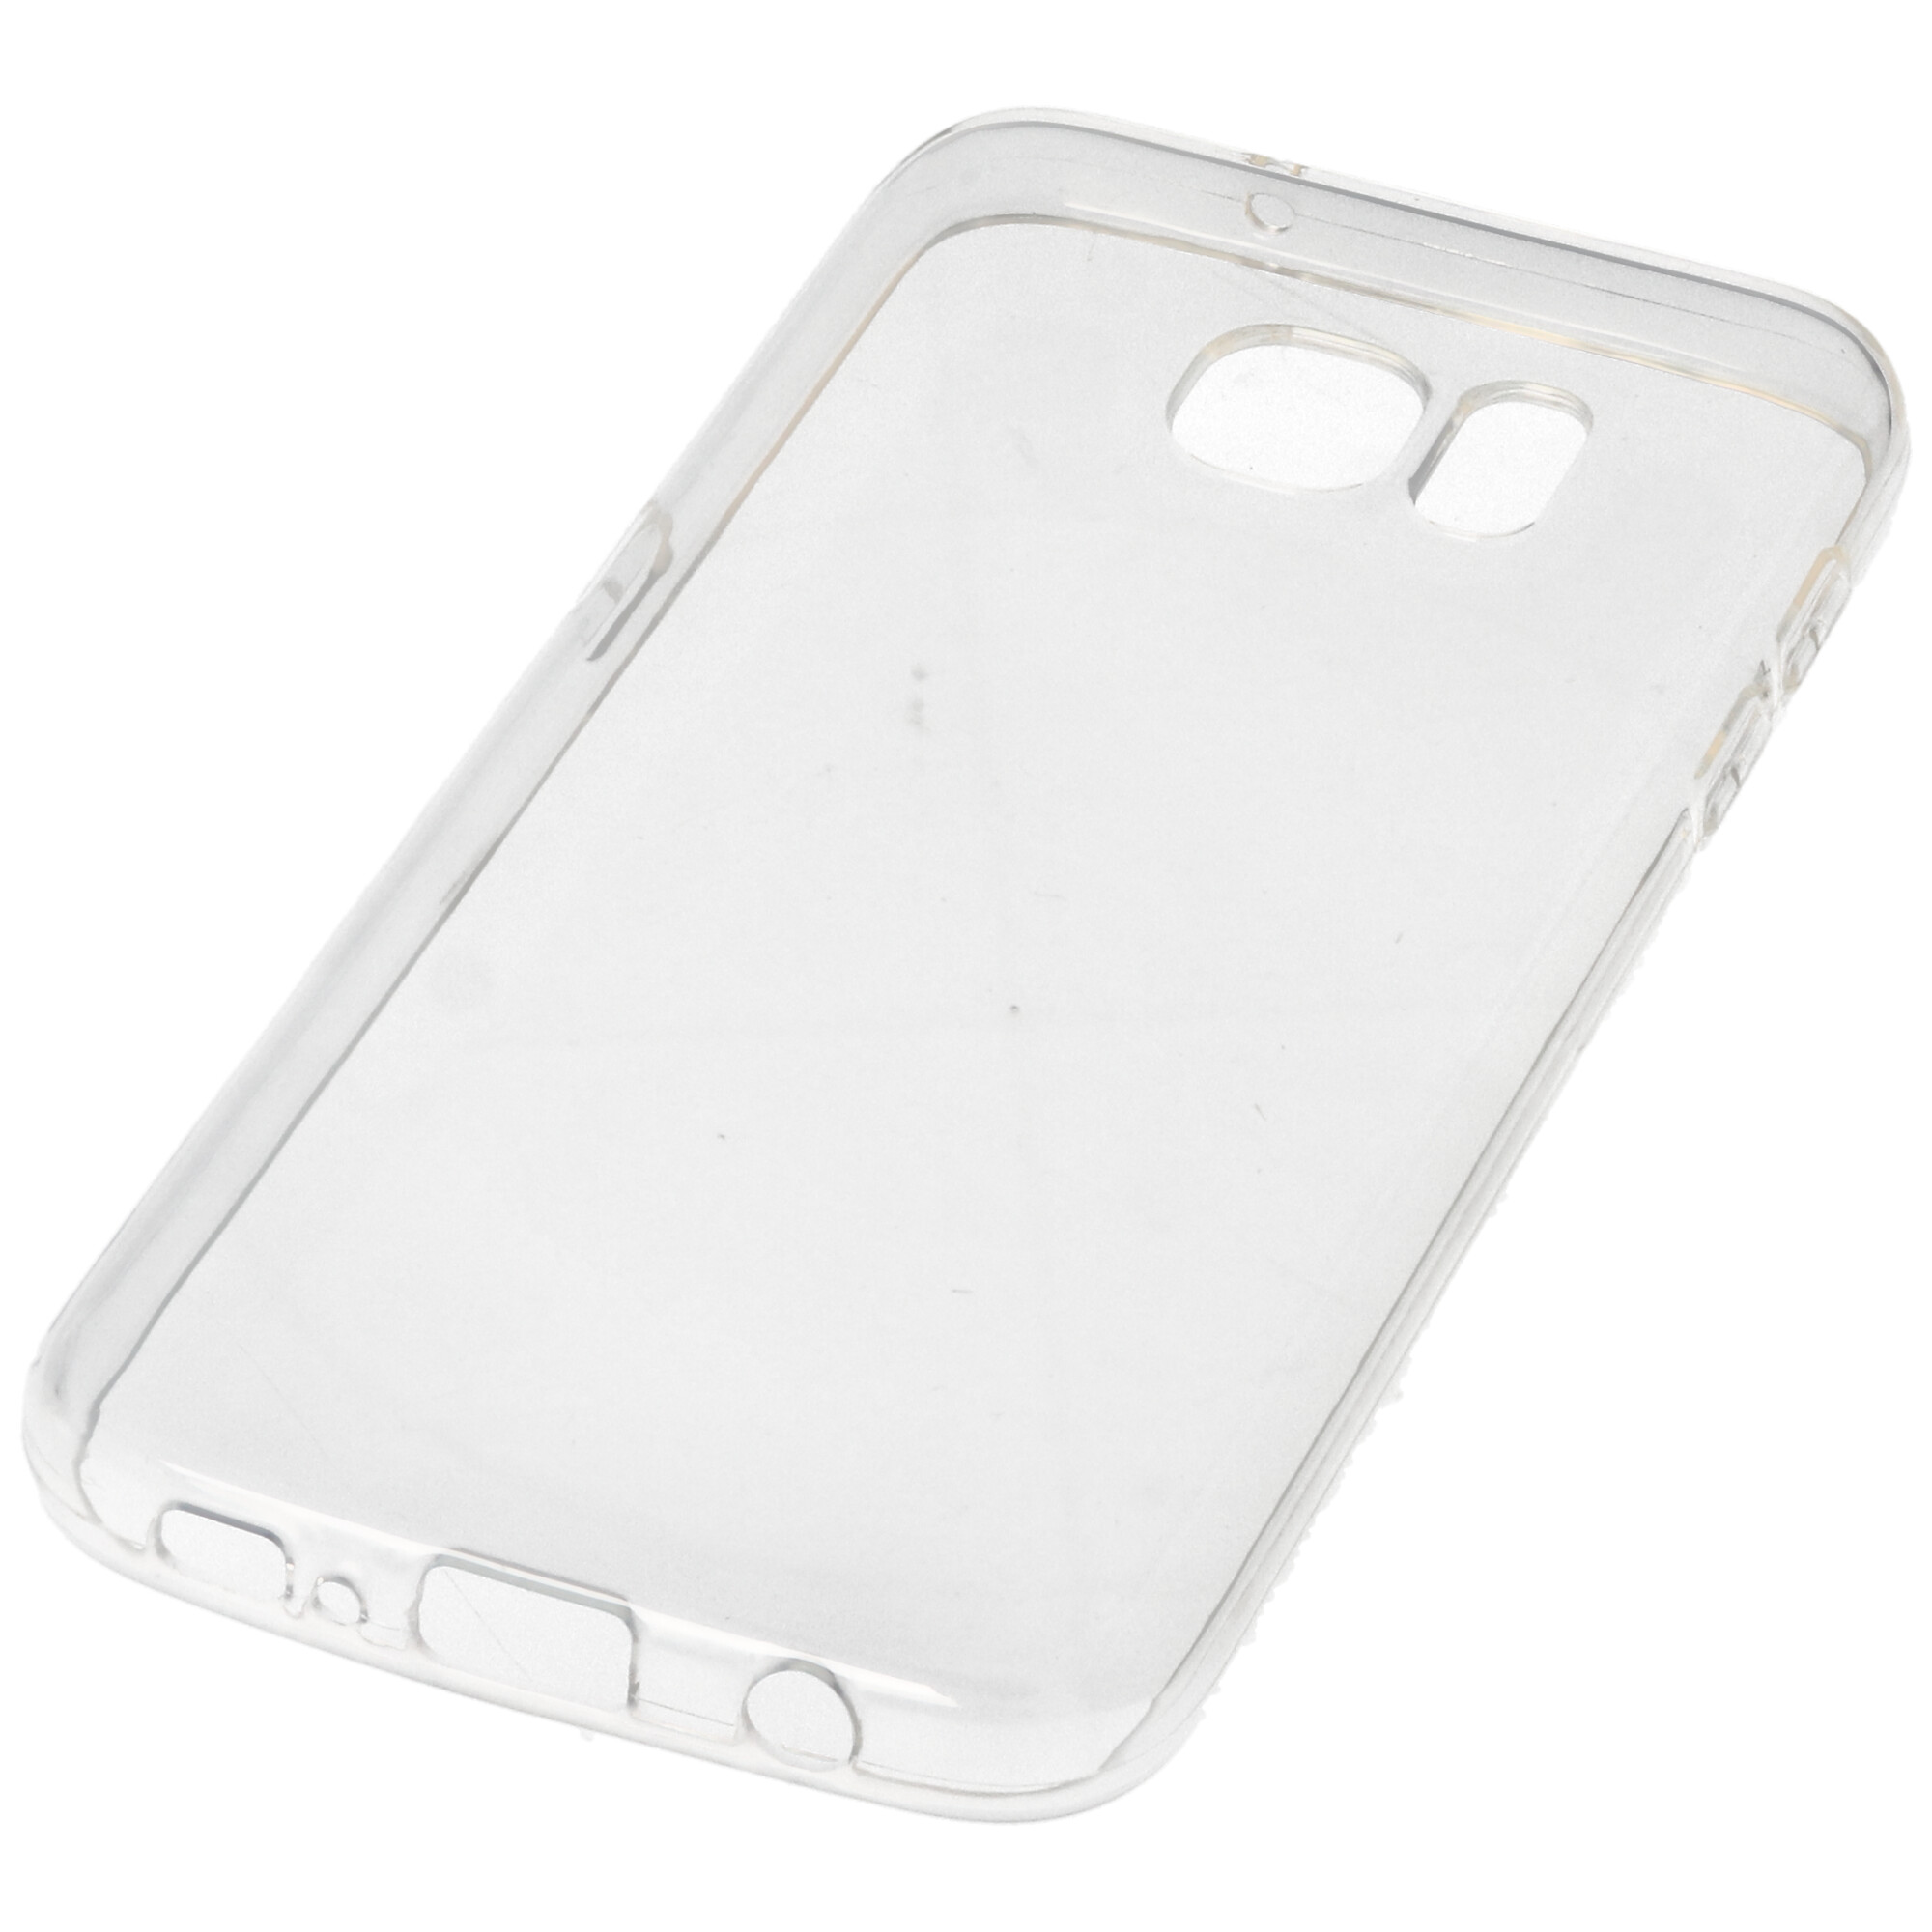 Hülle passend für Samsung Galaxy S6 Edge / S7 - transparente Schutzhülle, Anti-Gelb Luftkissen Fallschutz Silikon Handyhülle robustes TPU Case